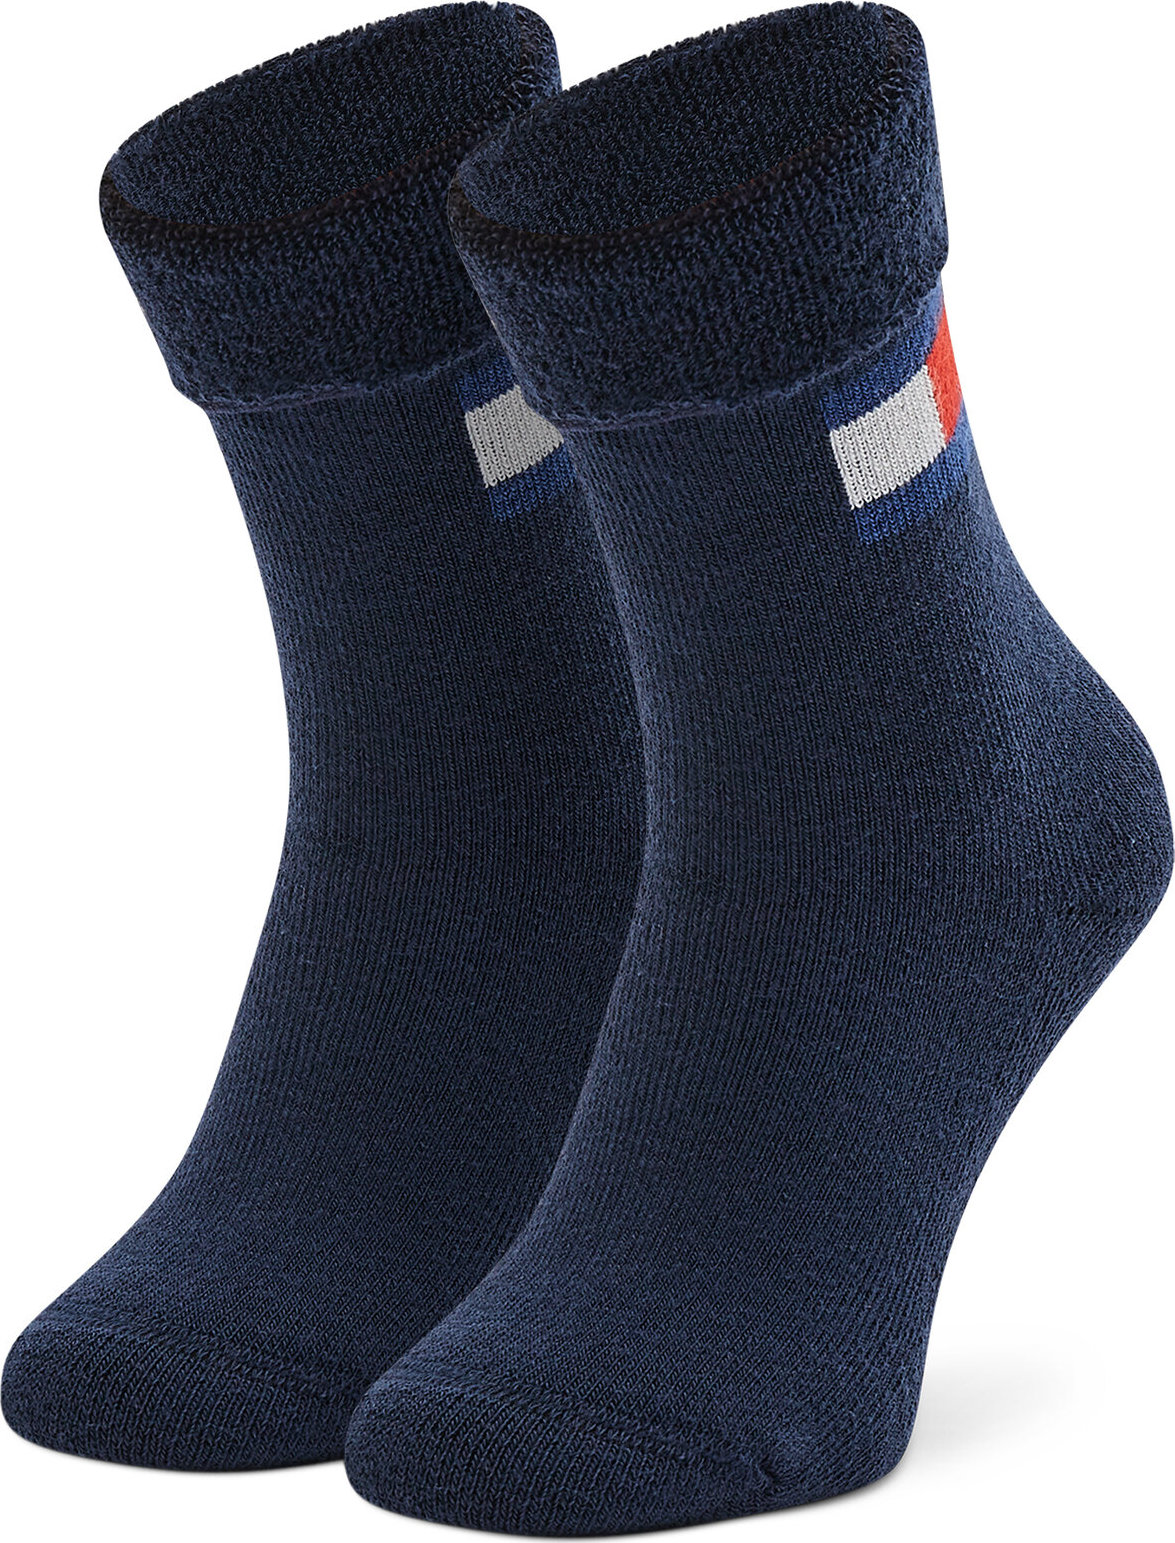 Vysoké dětské ponožky Tommy Hilfiger 701220271 Navy 002